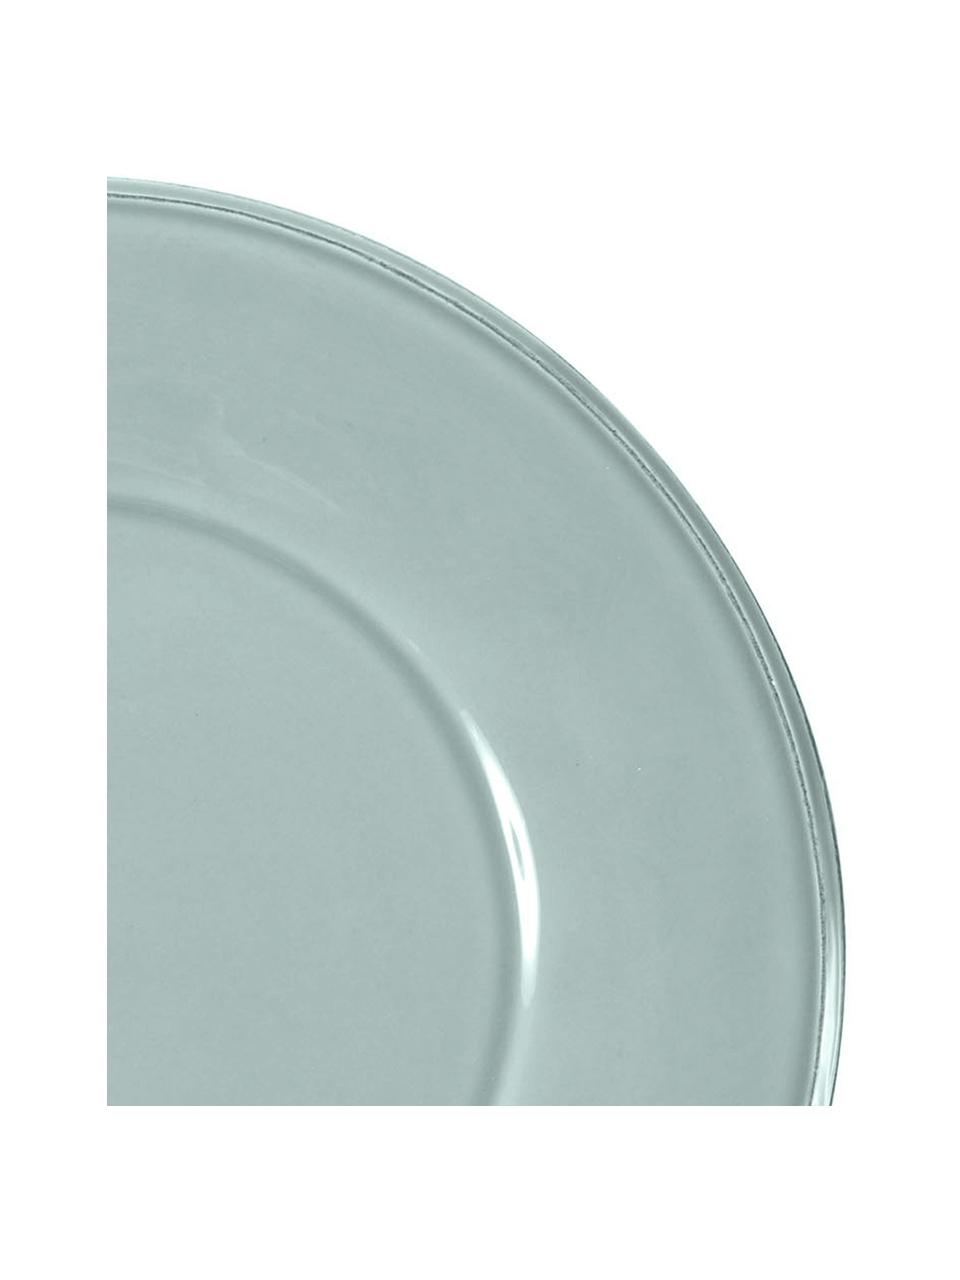 Assiette plate rustique Constance, 2 pièces, Grès cérame, Menthe, Ø 29 cm